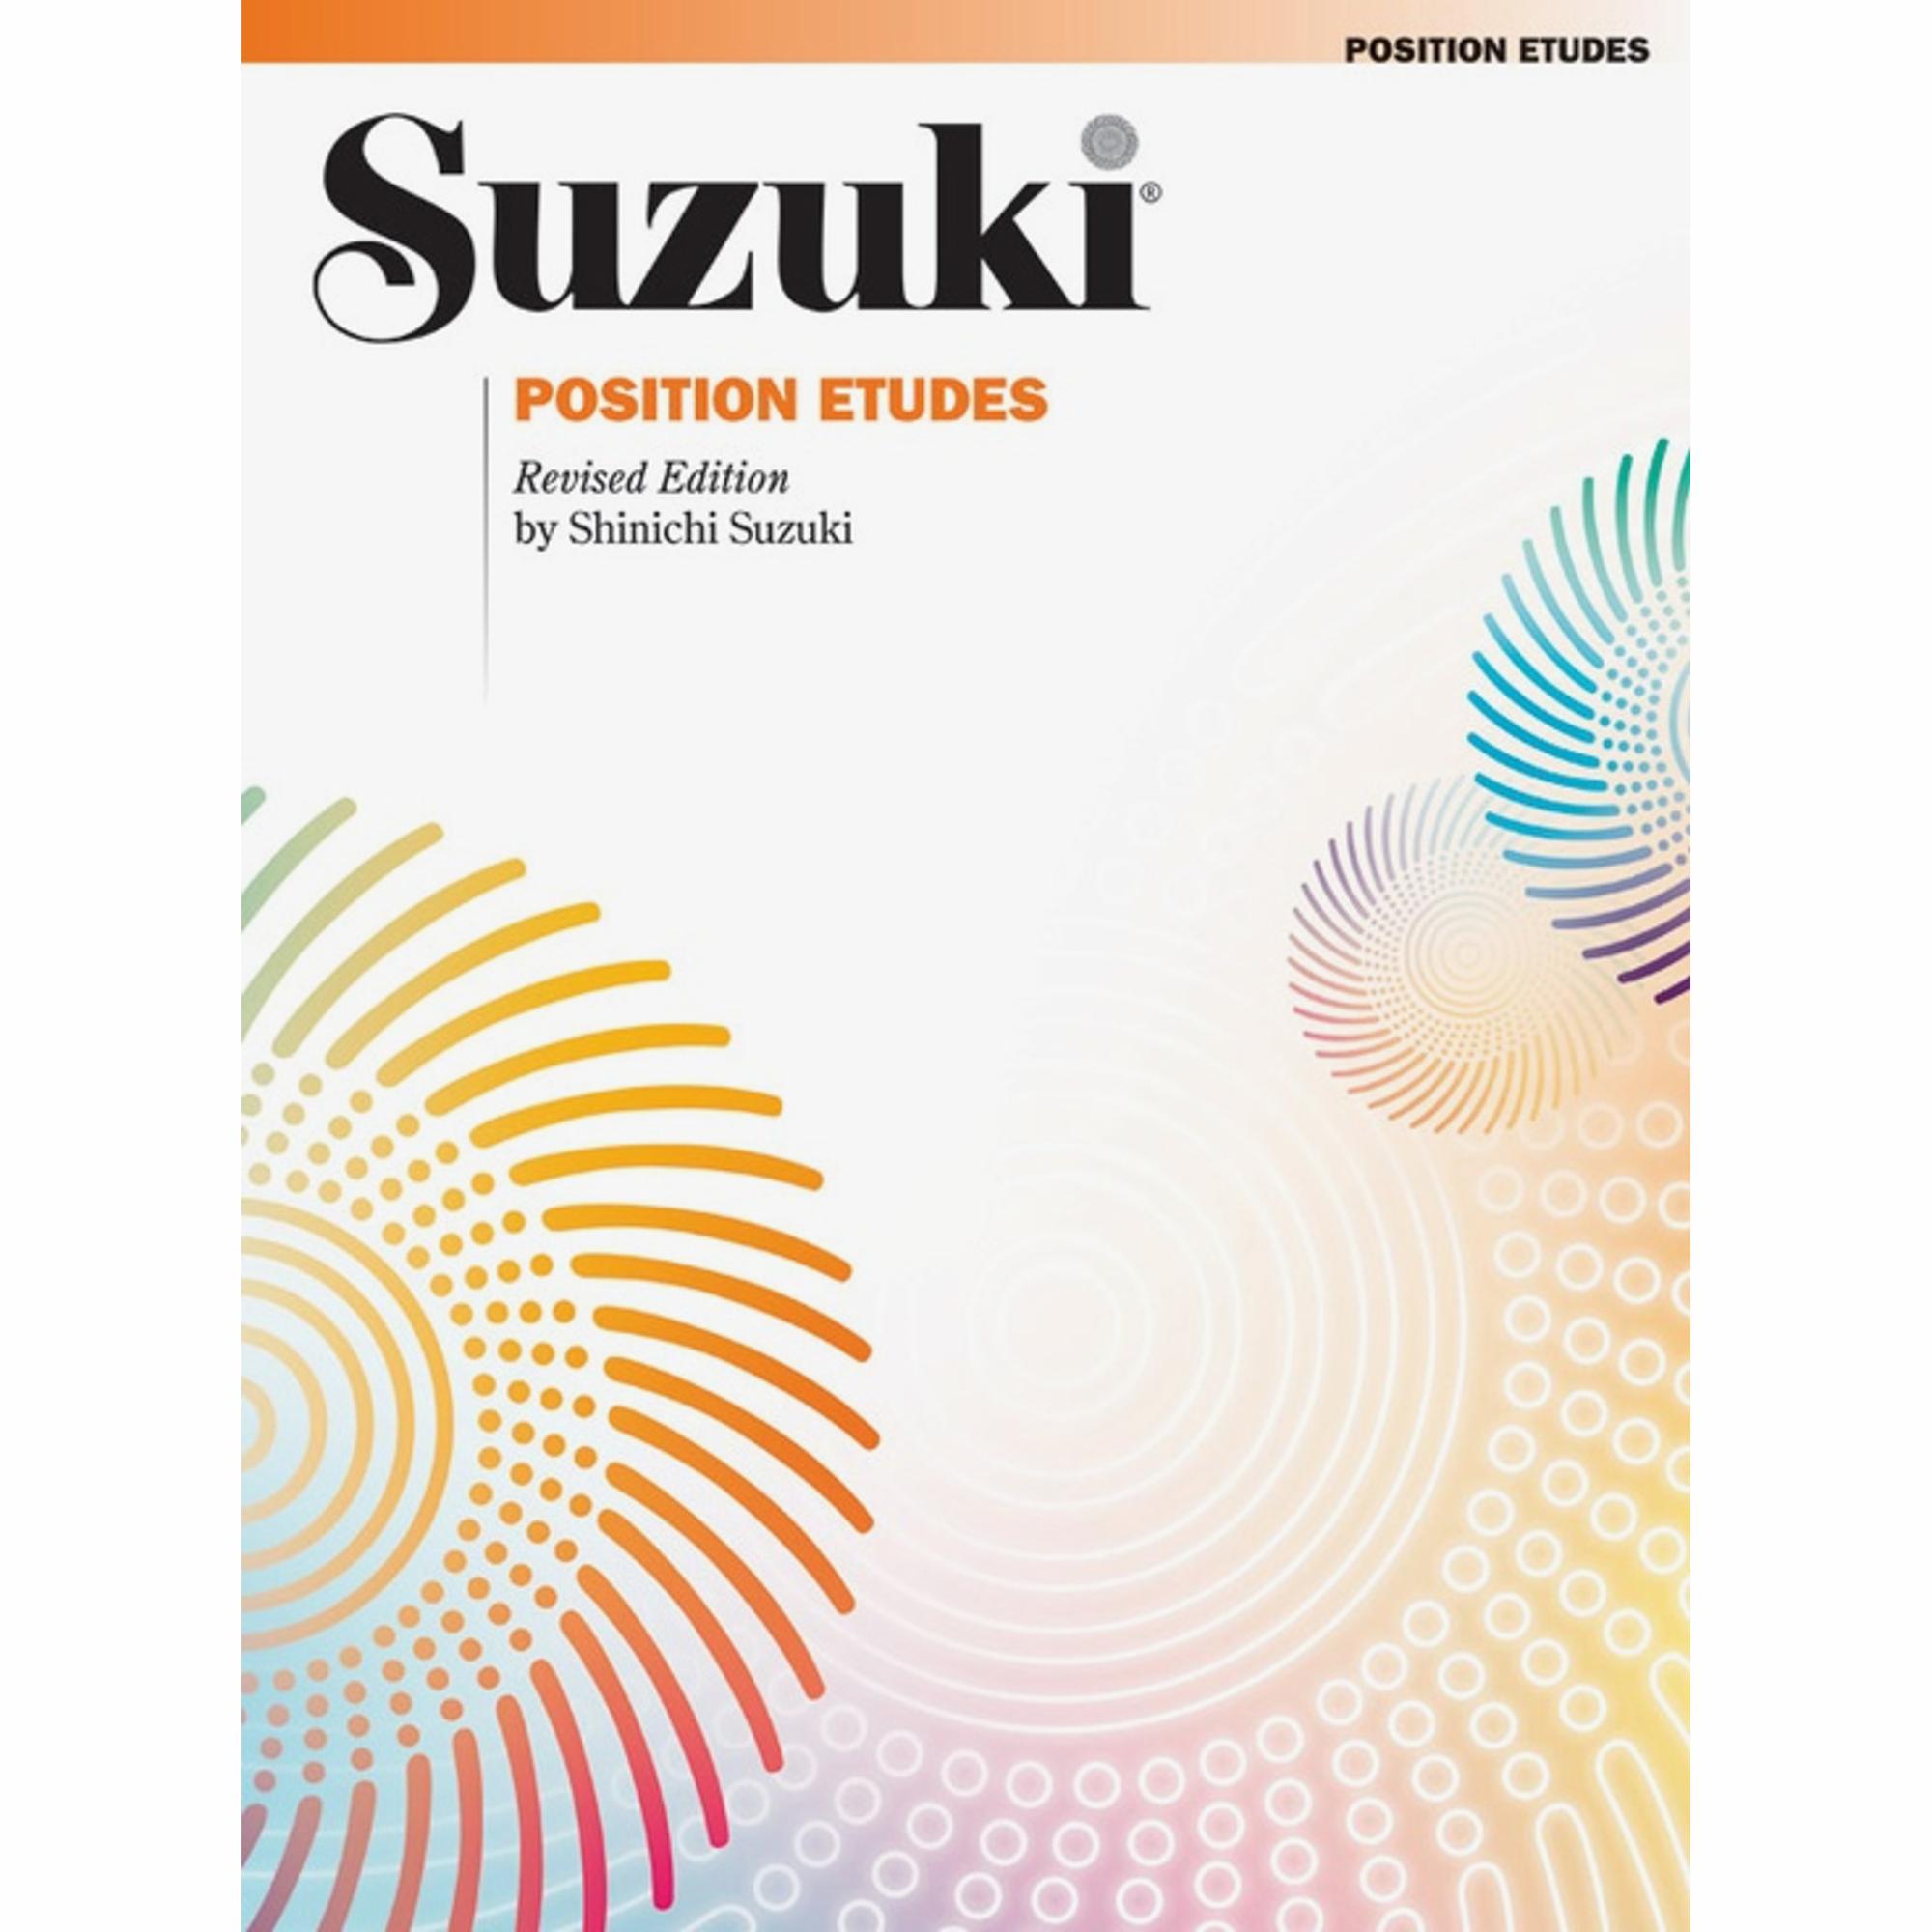 Suzuki: Position Etudes